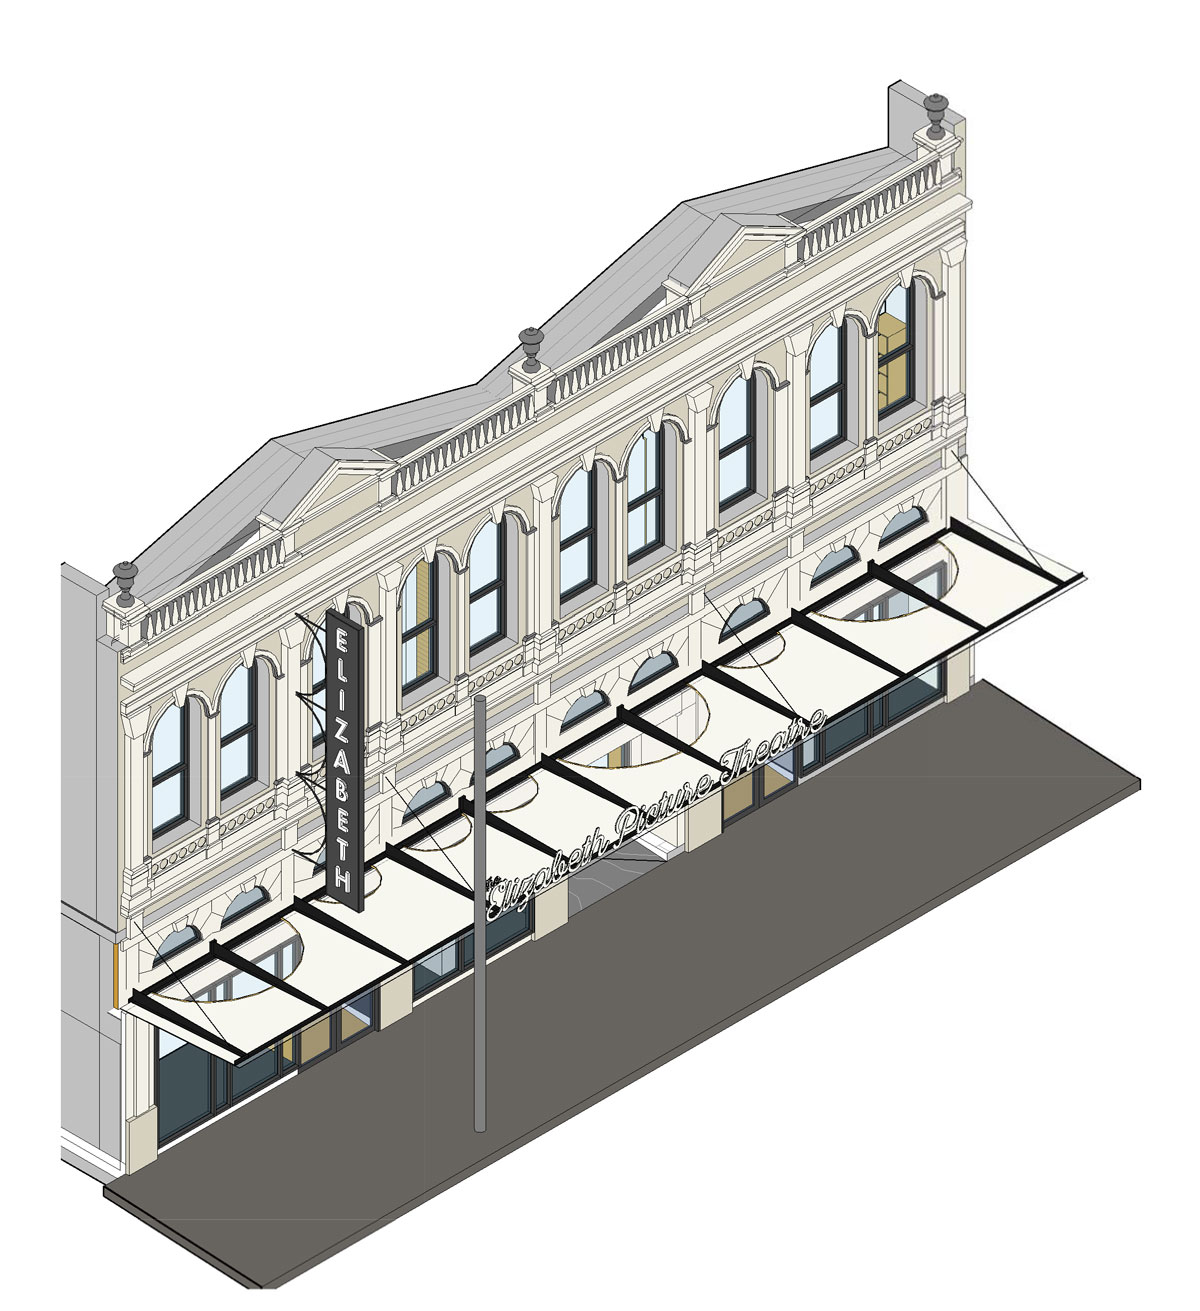 Proposed restoration of building facade